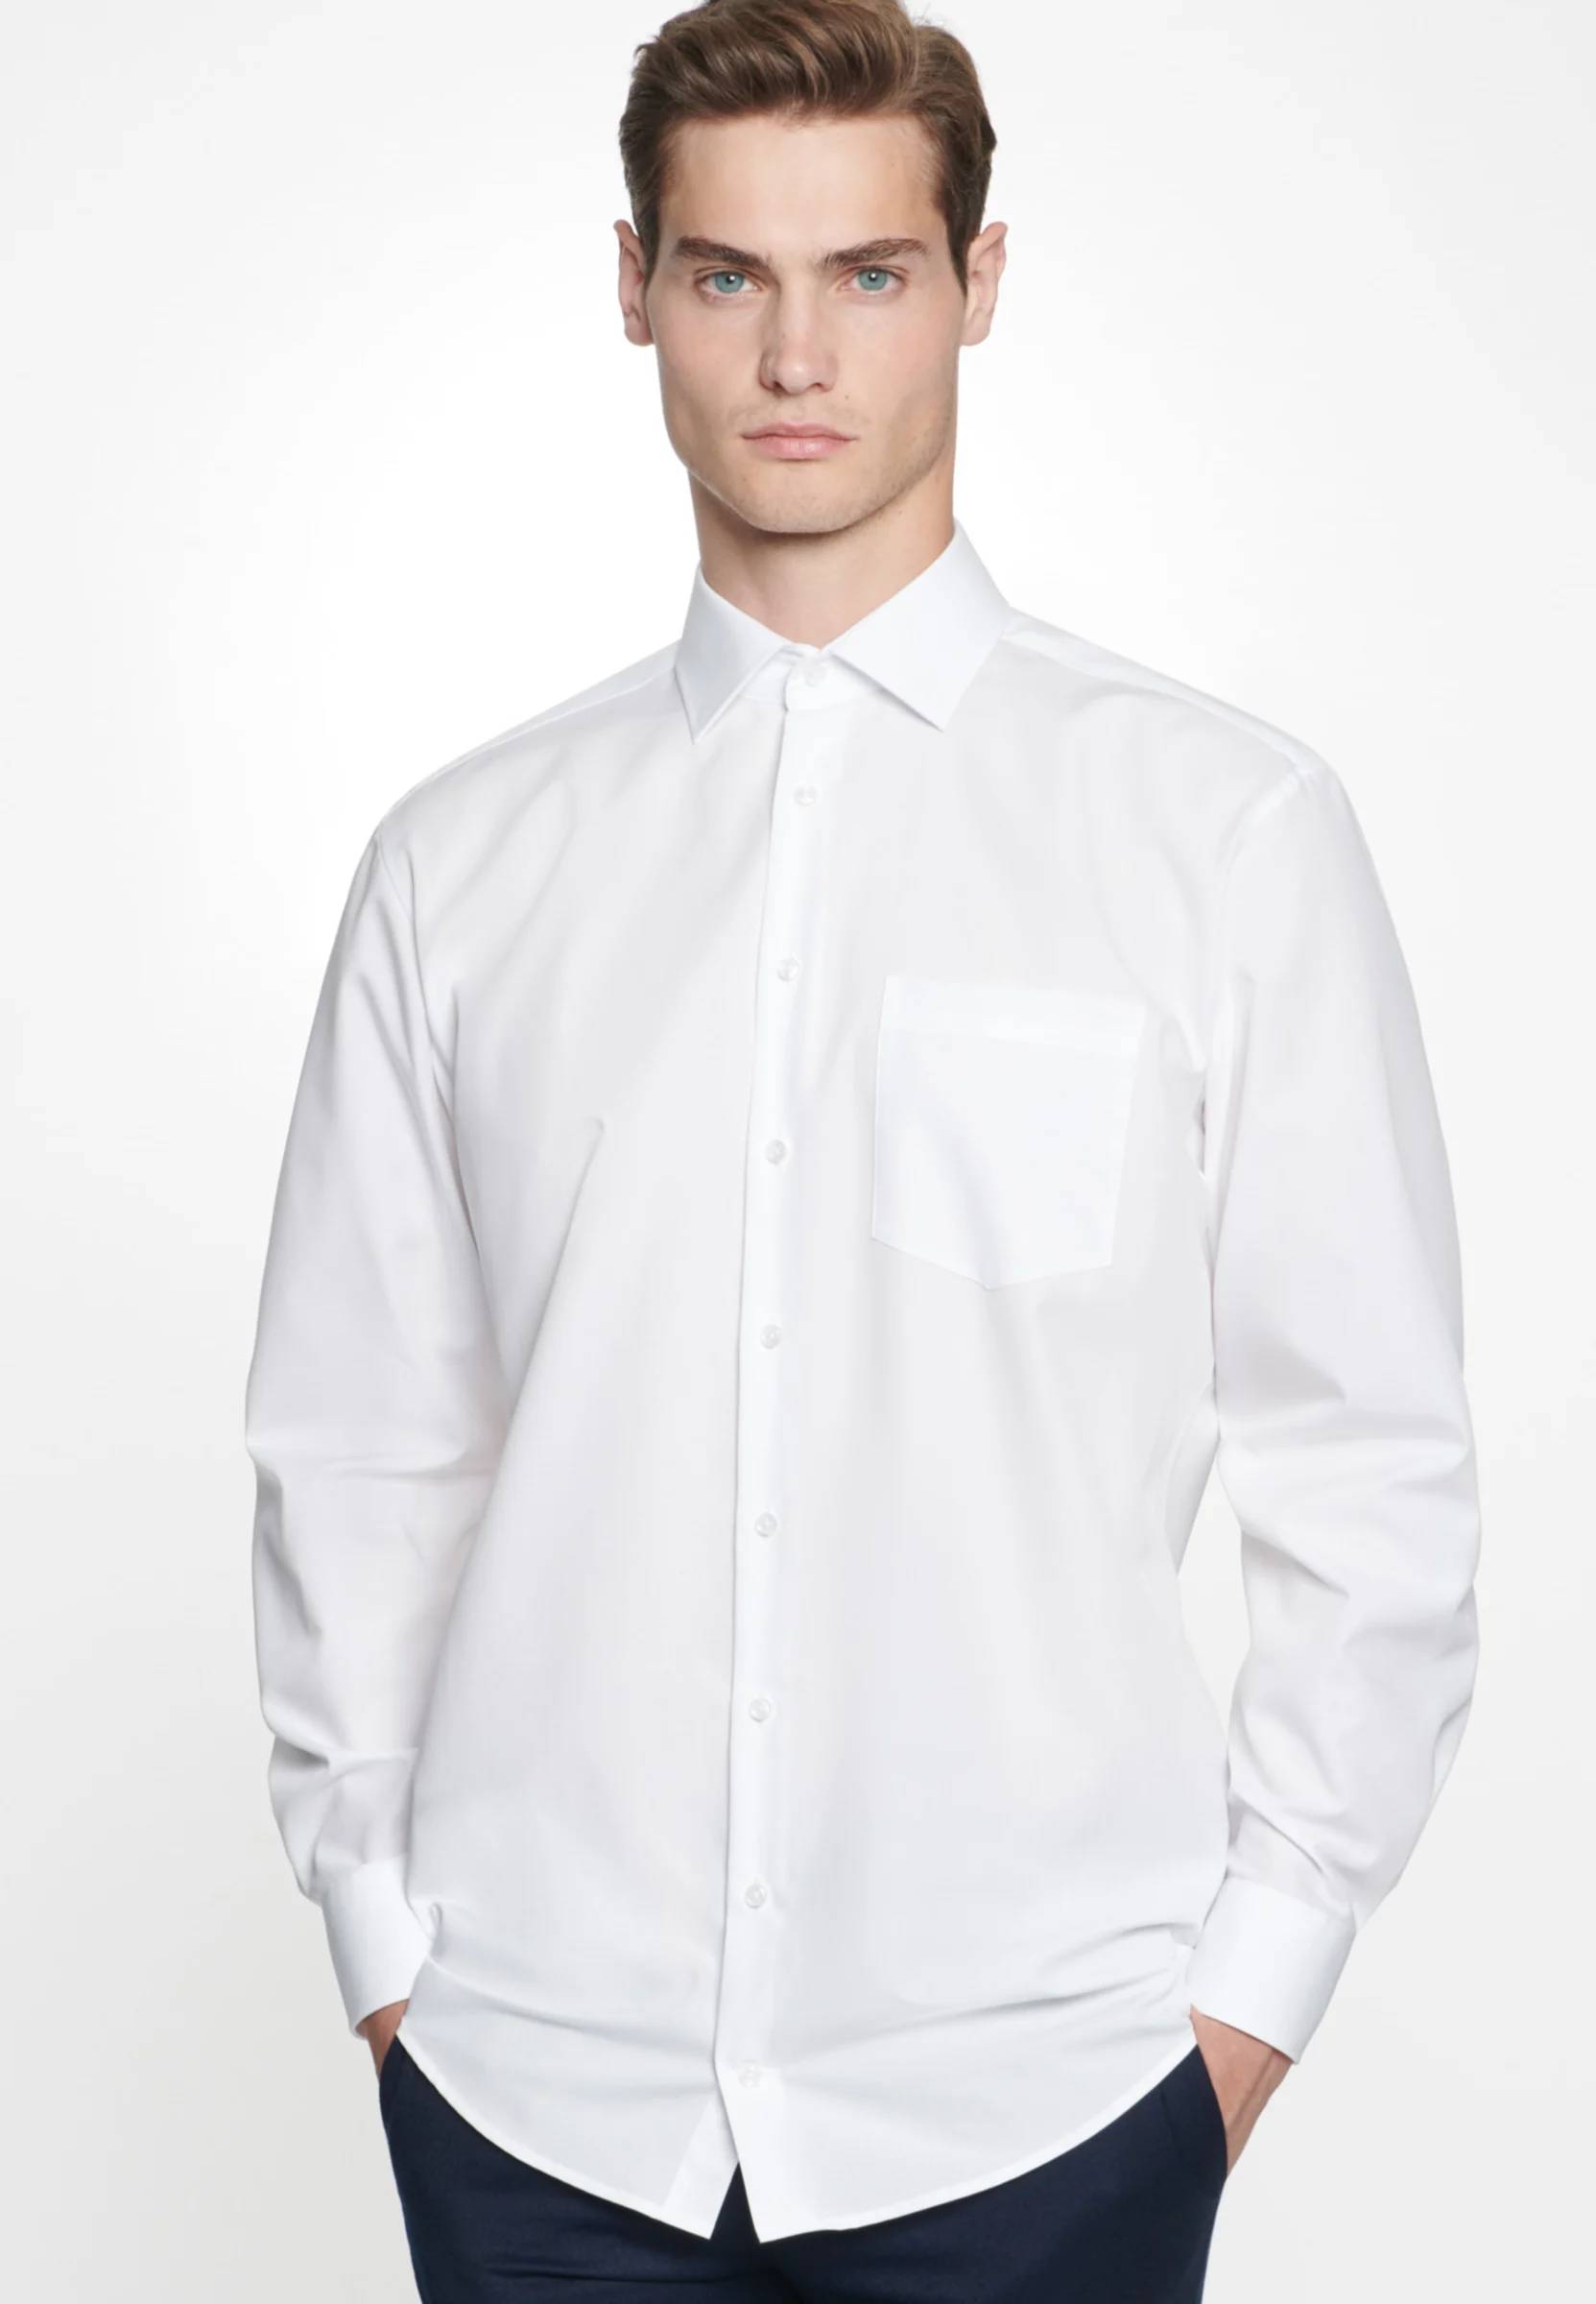 Seidensticker Herren Langarm Hemd Tailored weiß struktur 246897.01 